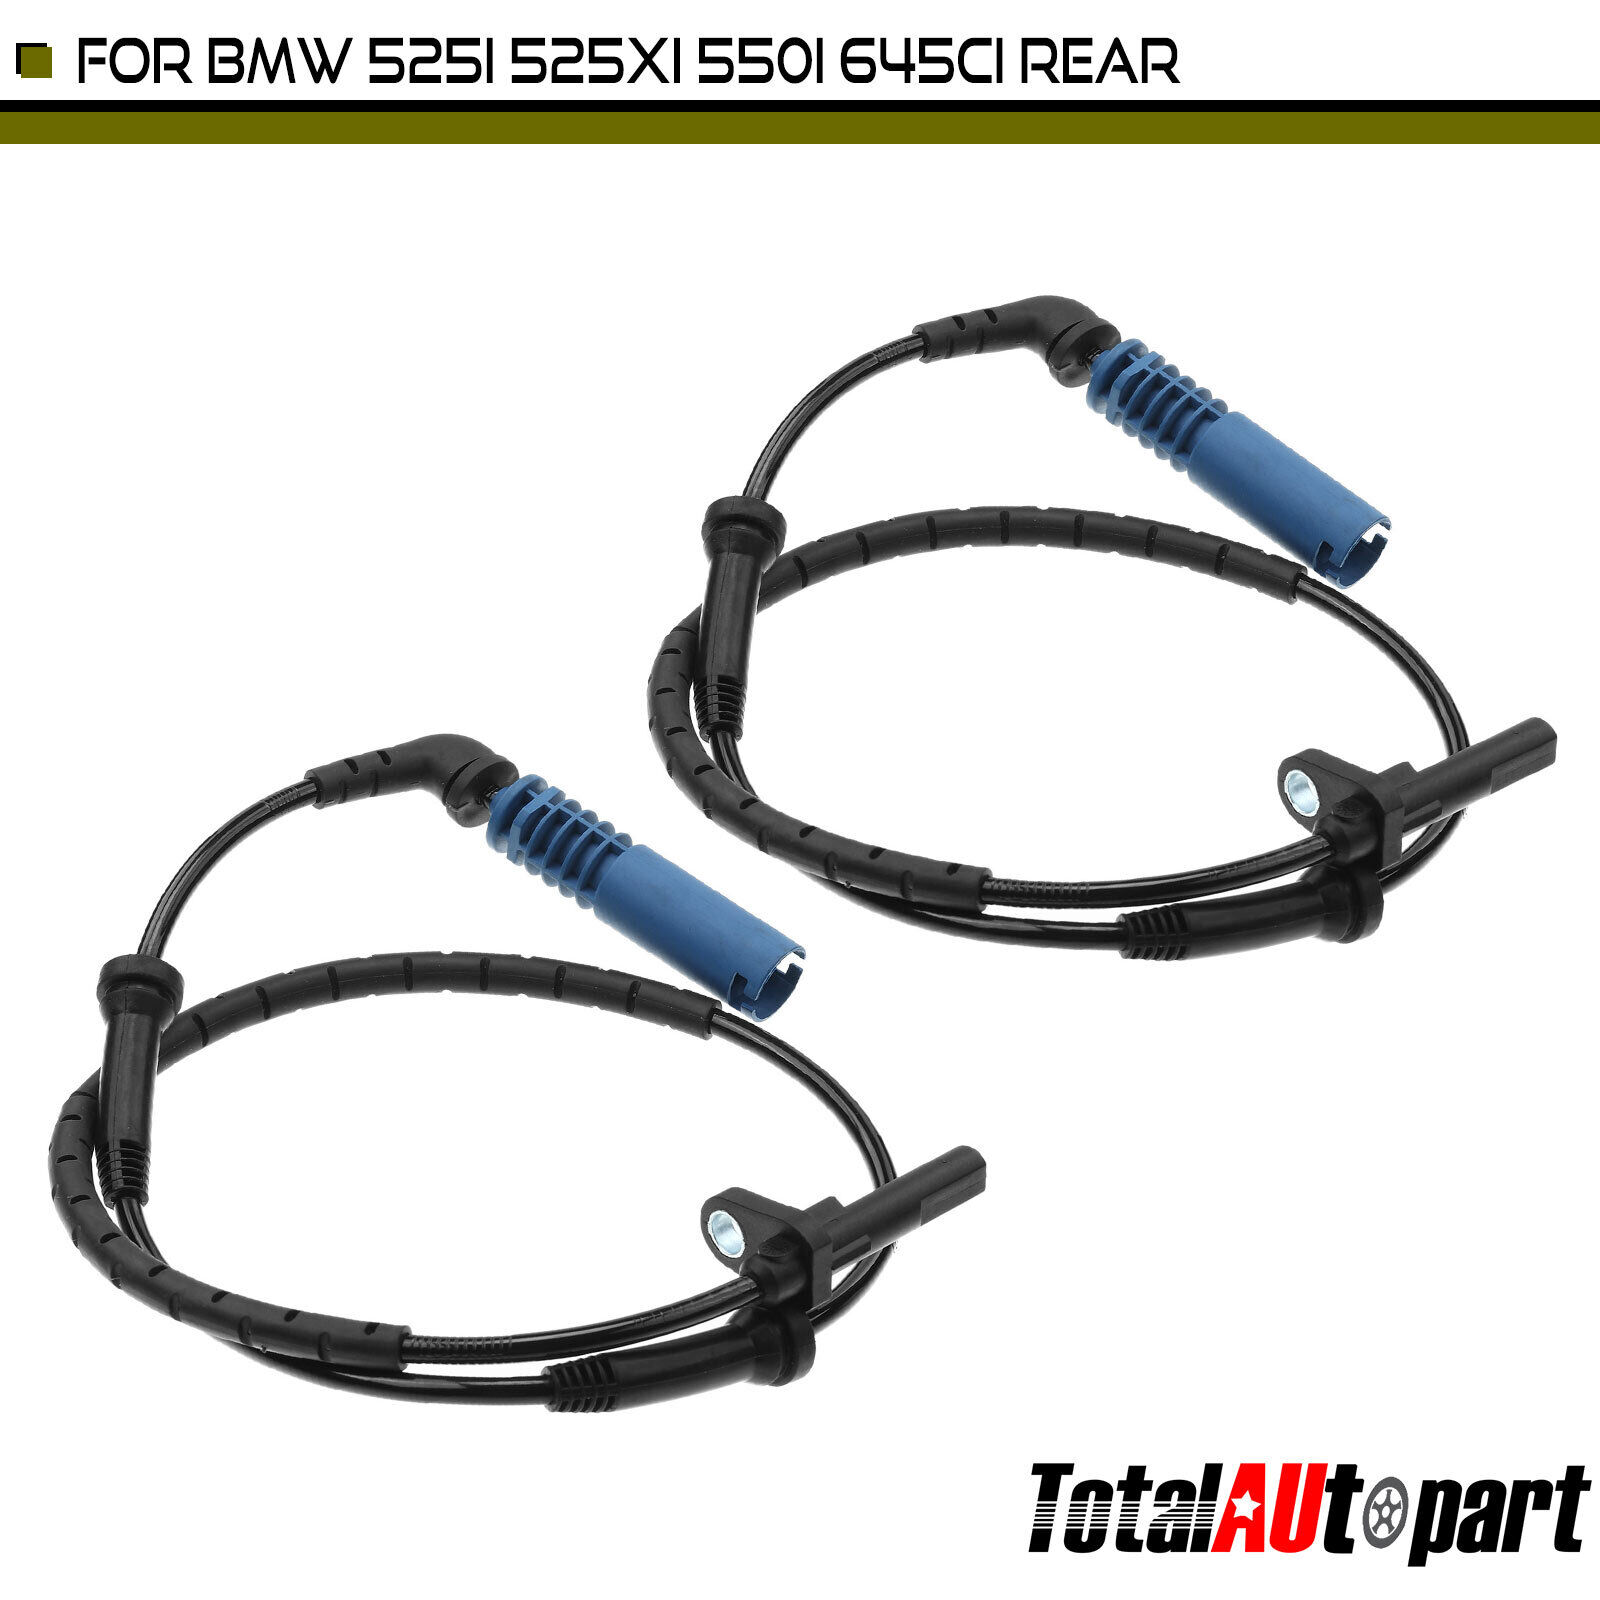 2x ABS Wheel Speed Sensor for BMW 525i 04-07 525xi 530i 535i 645Ci 650Ci Rear